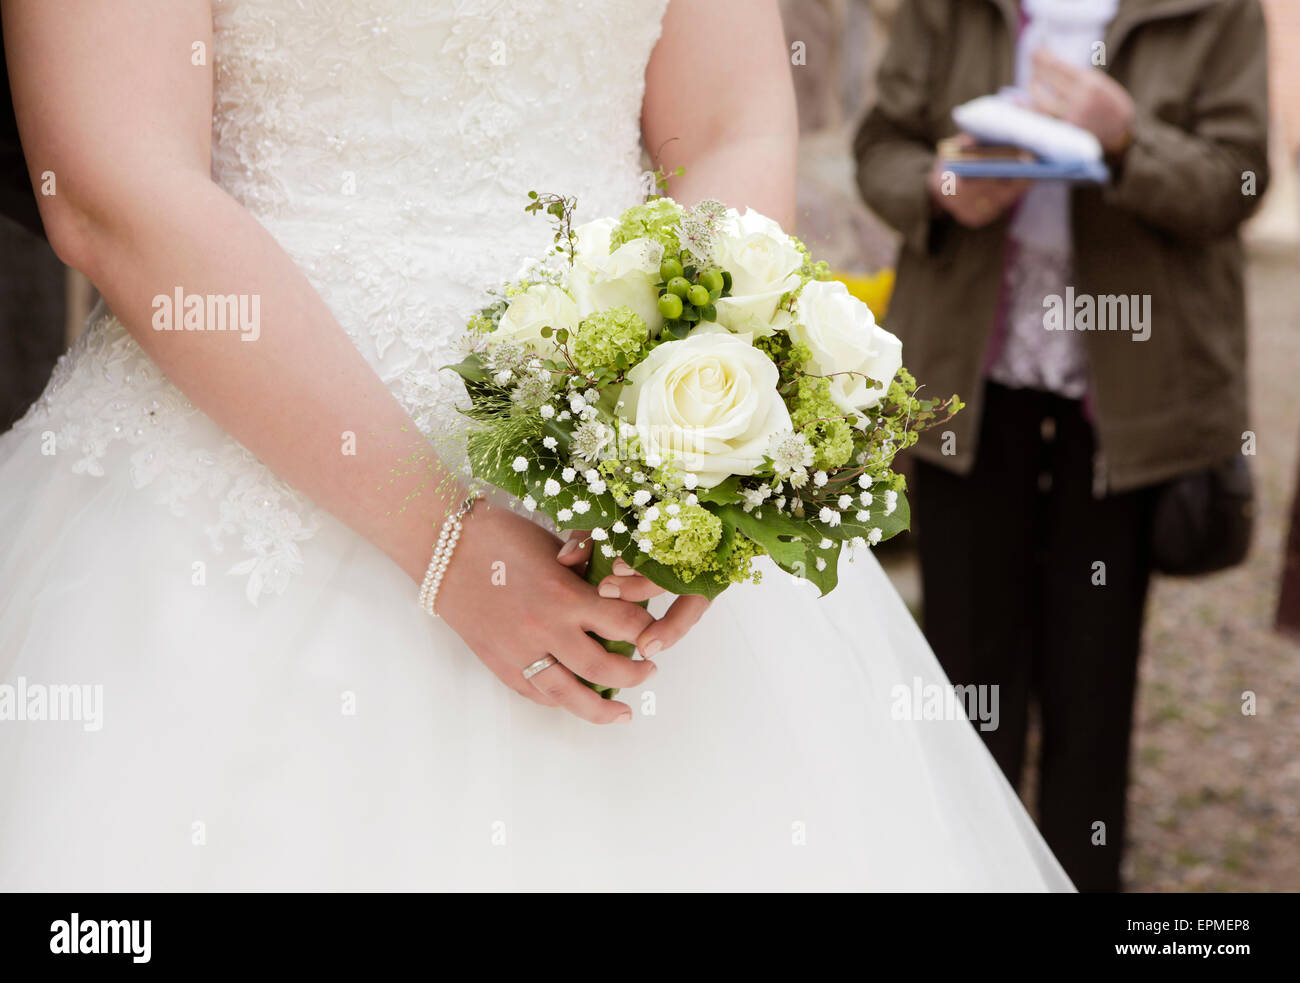 Una novia en un vestido blanco sosteniendo un ramo de novia con rosas en la mano Foto de stock